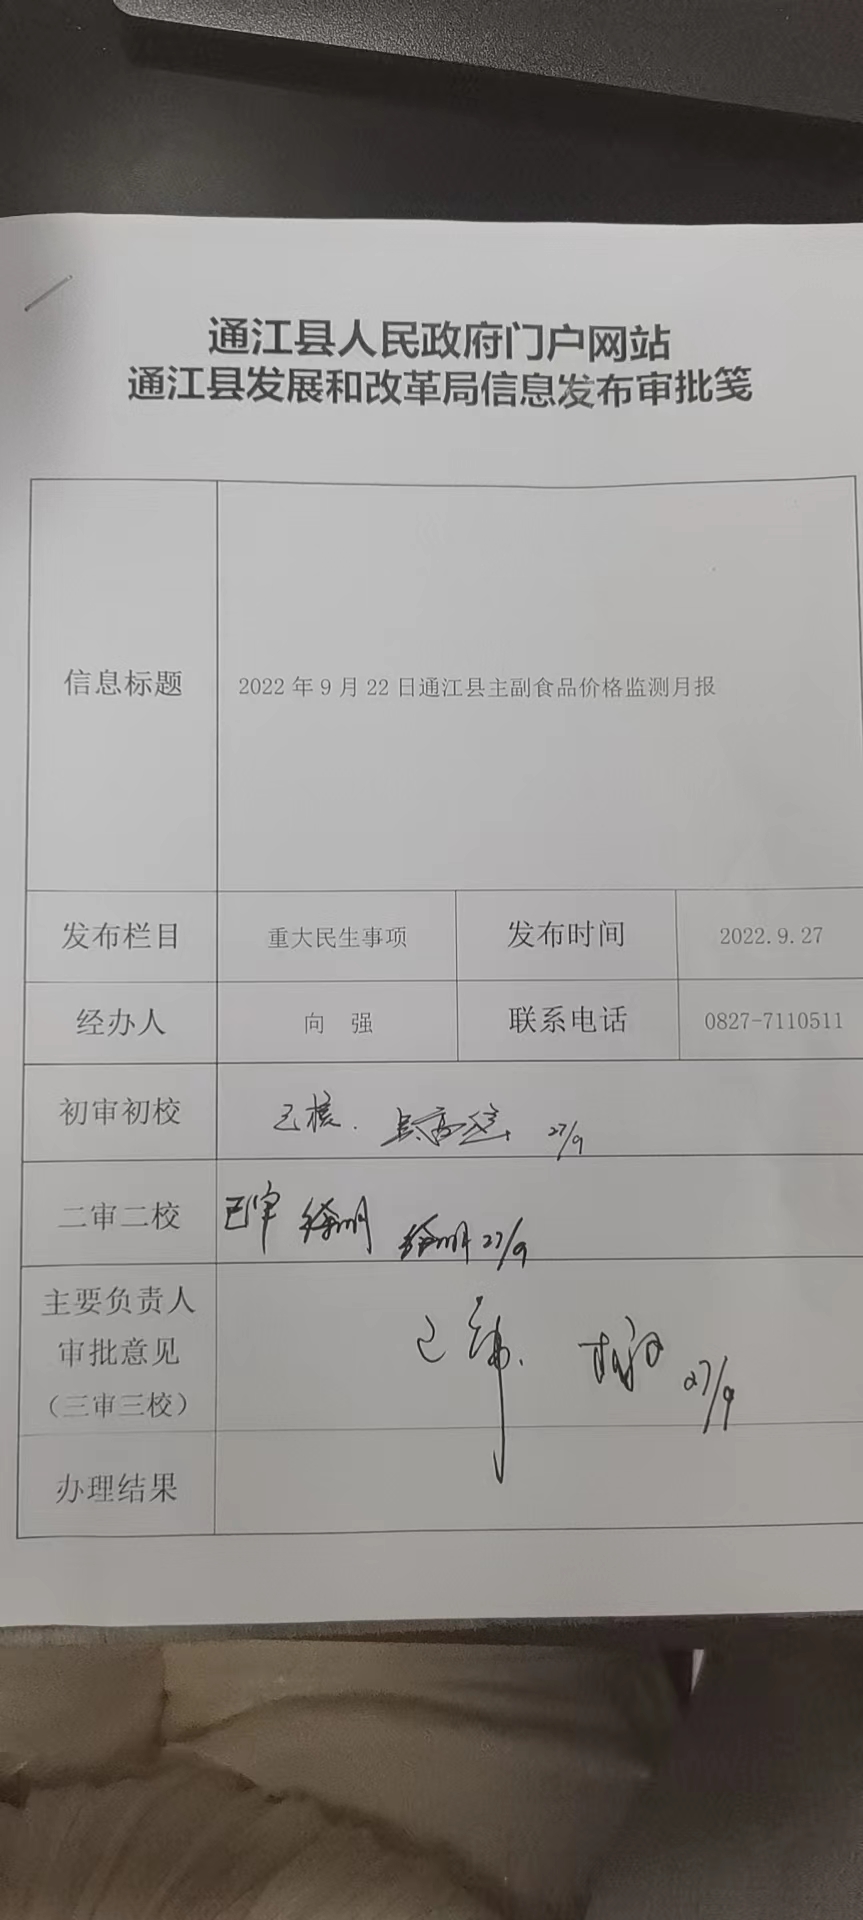 2022年9月22日通江县主副食品价格监测月报